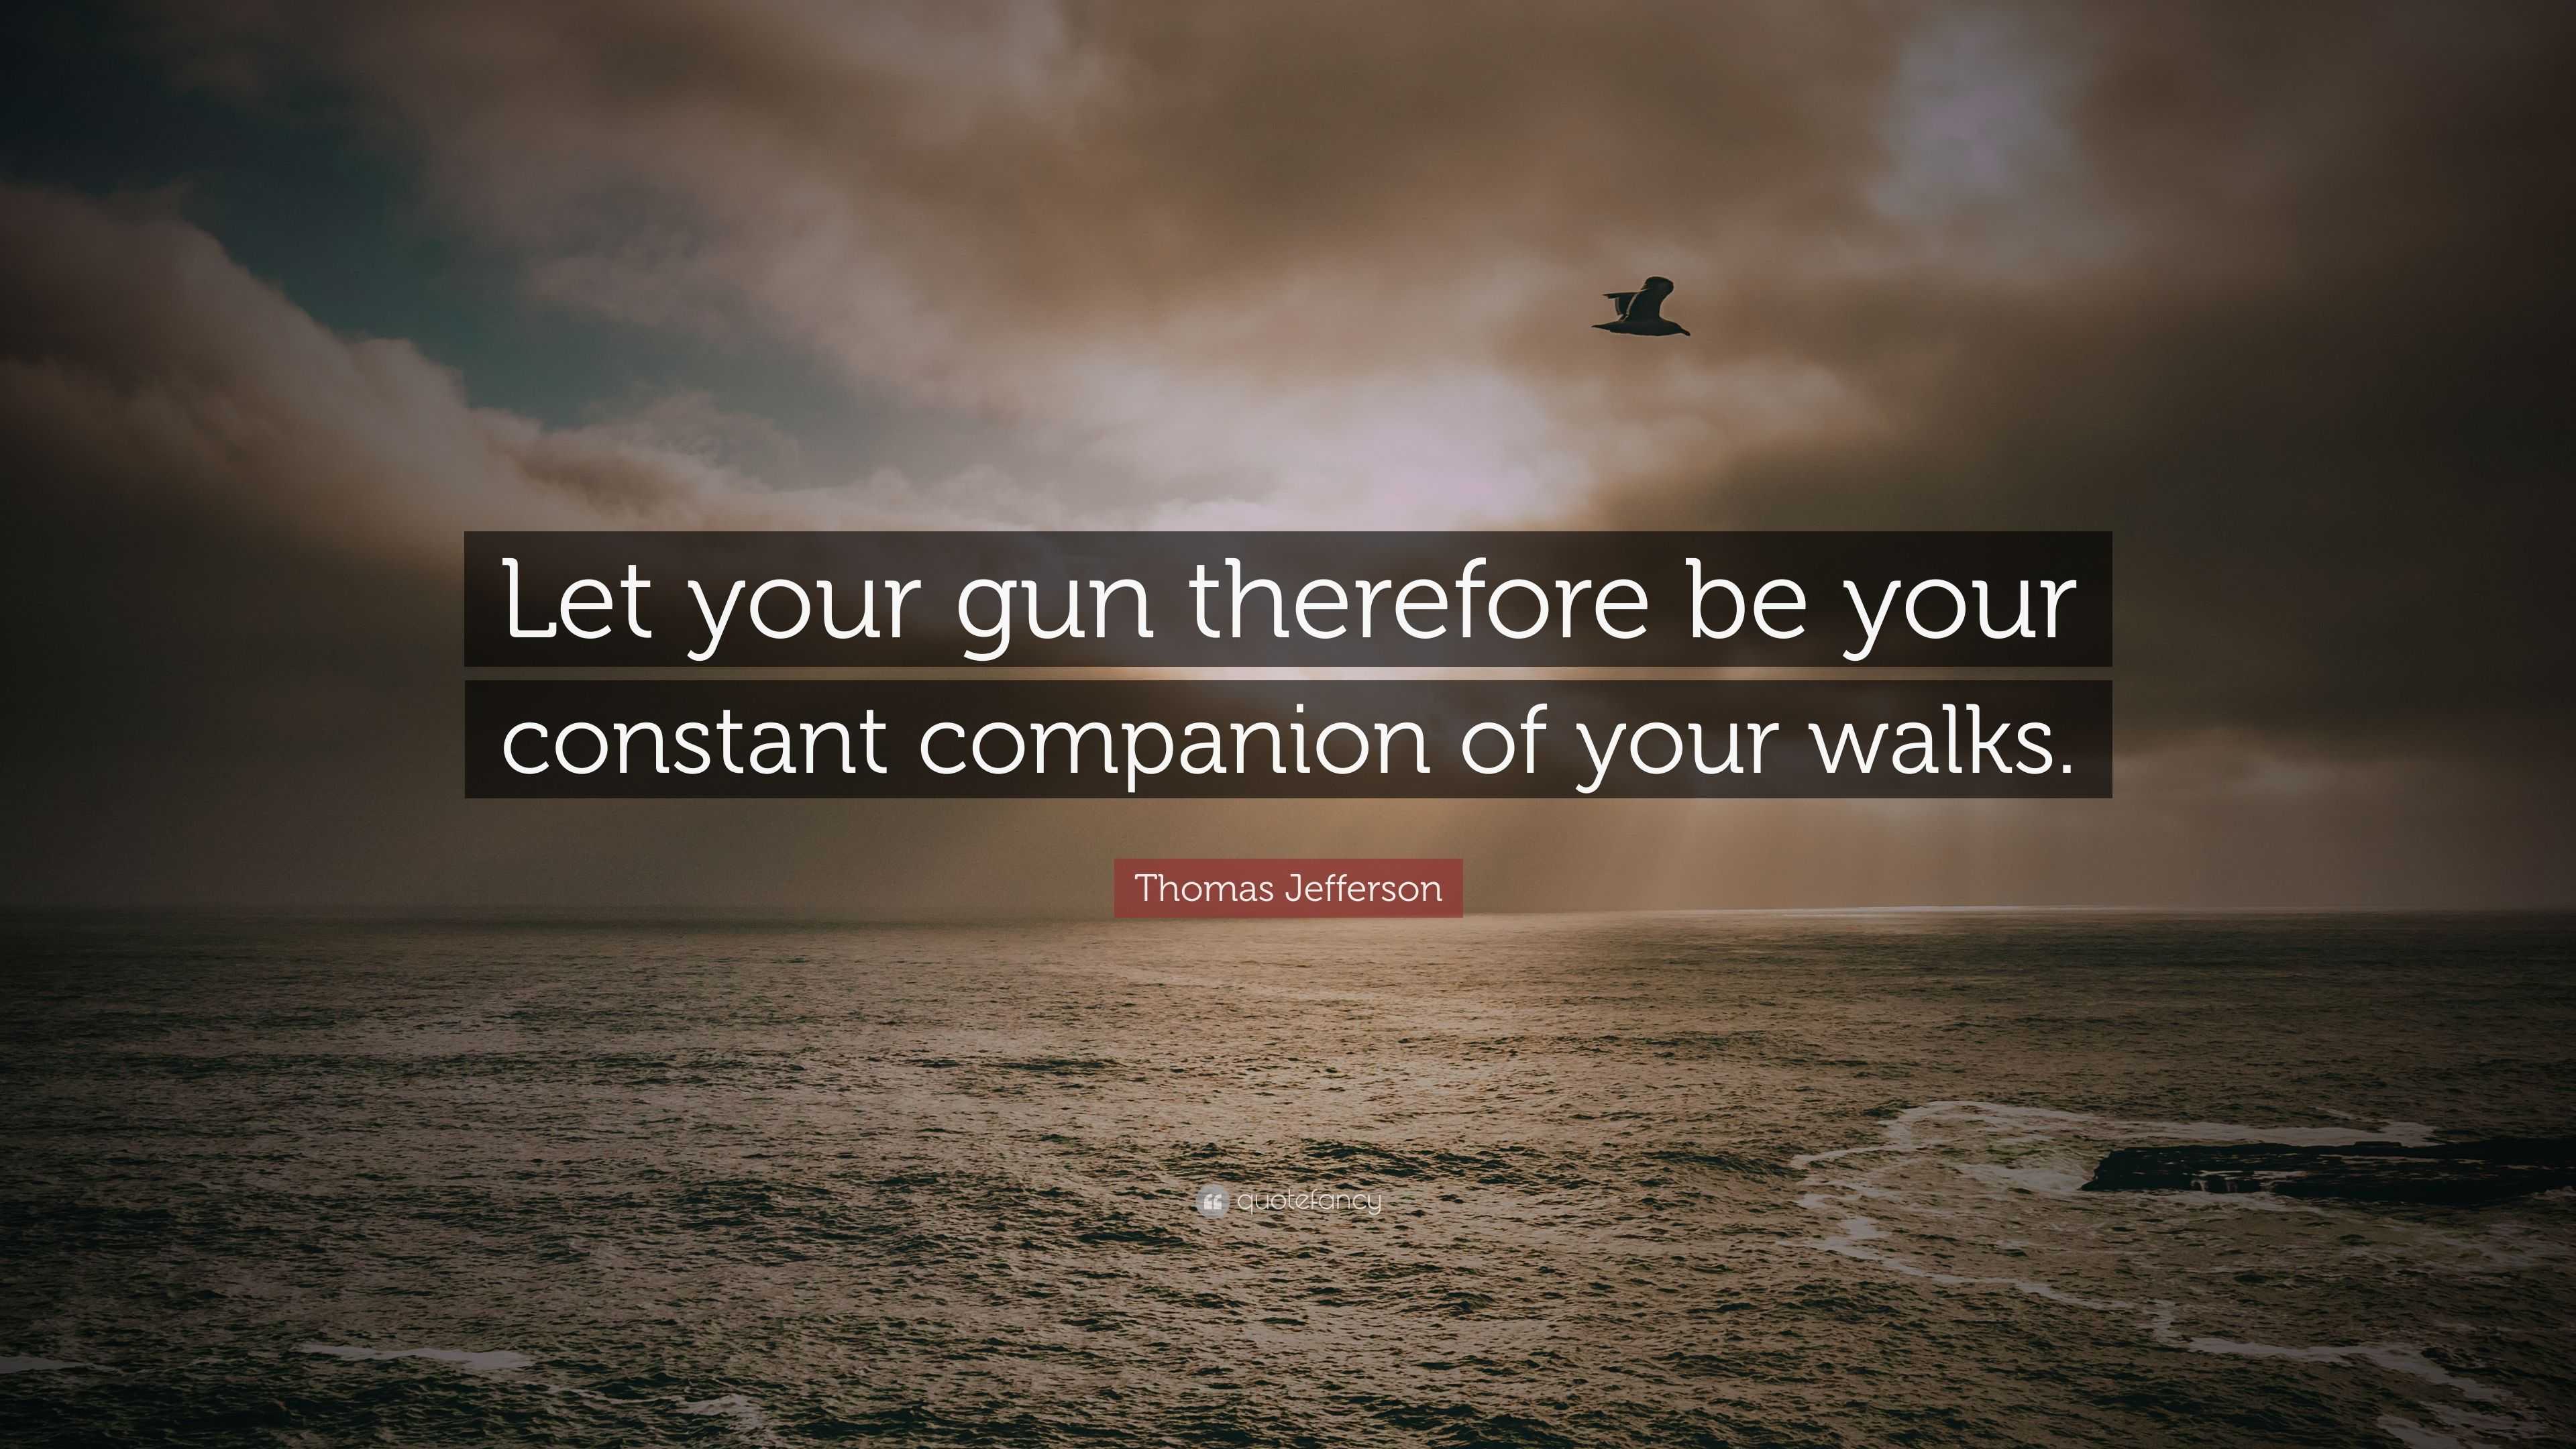 thomas jefferson quotes on guns